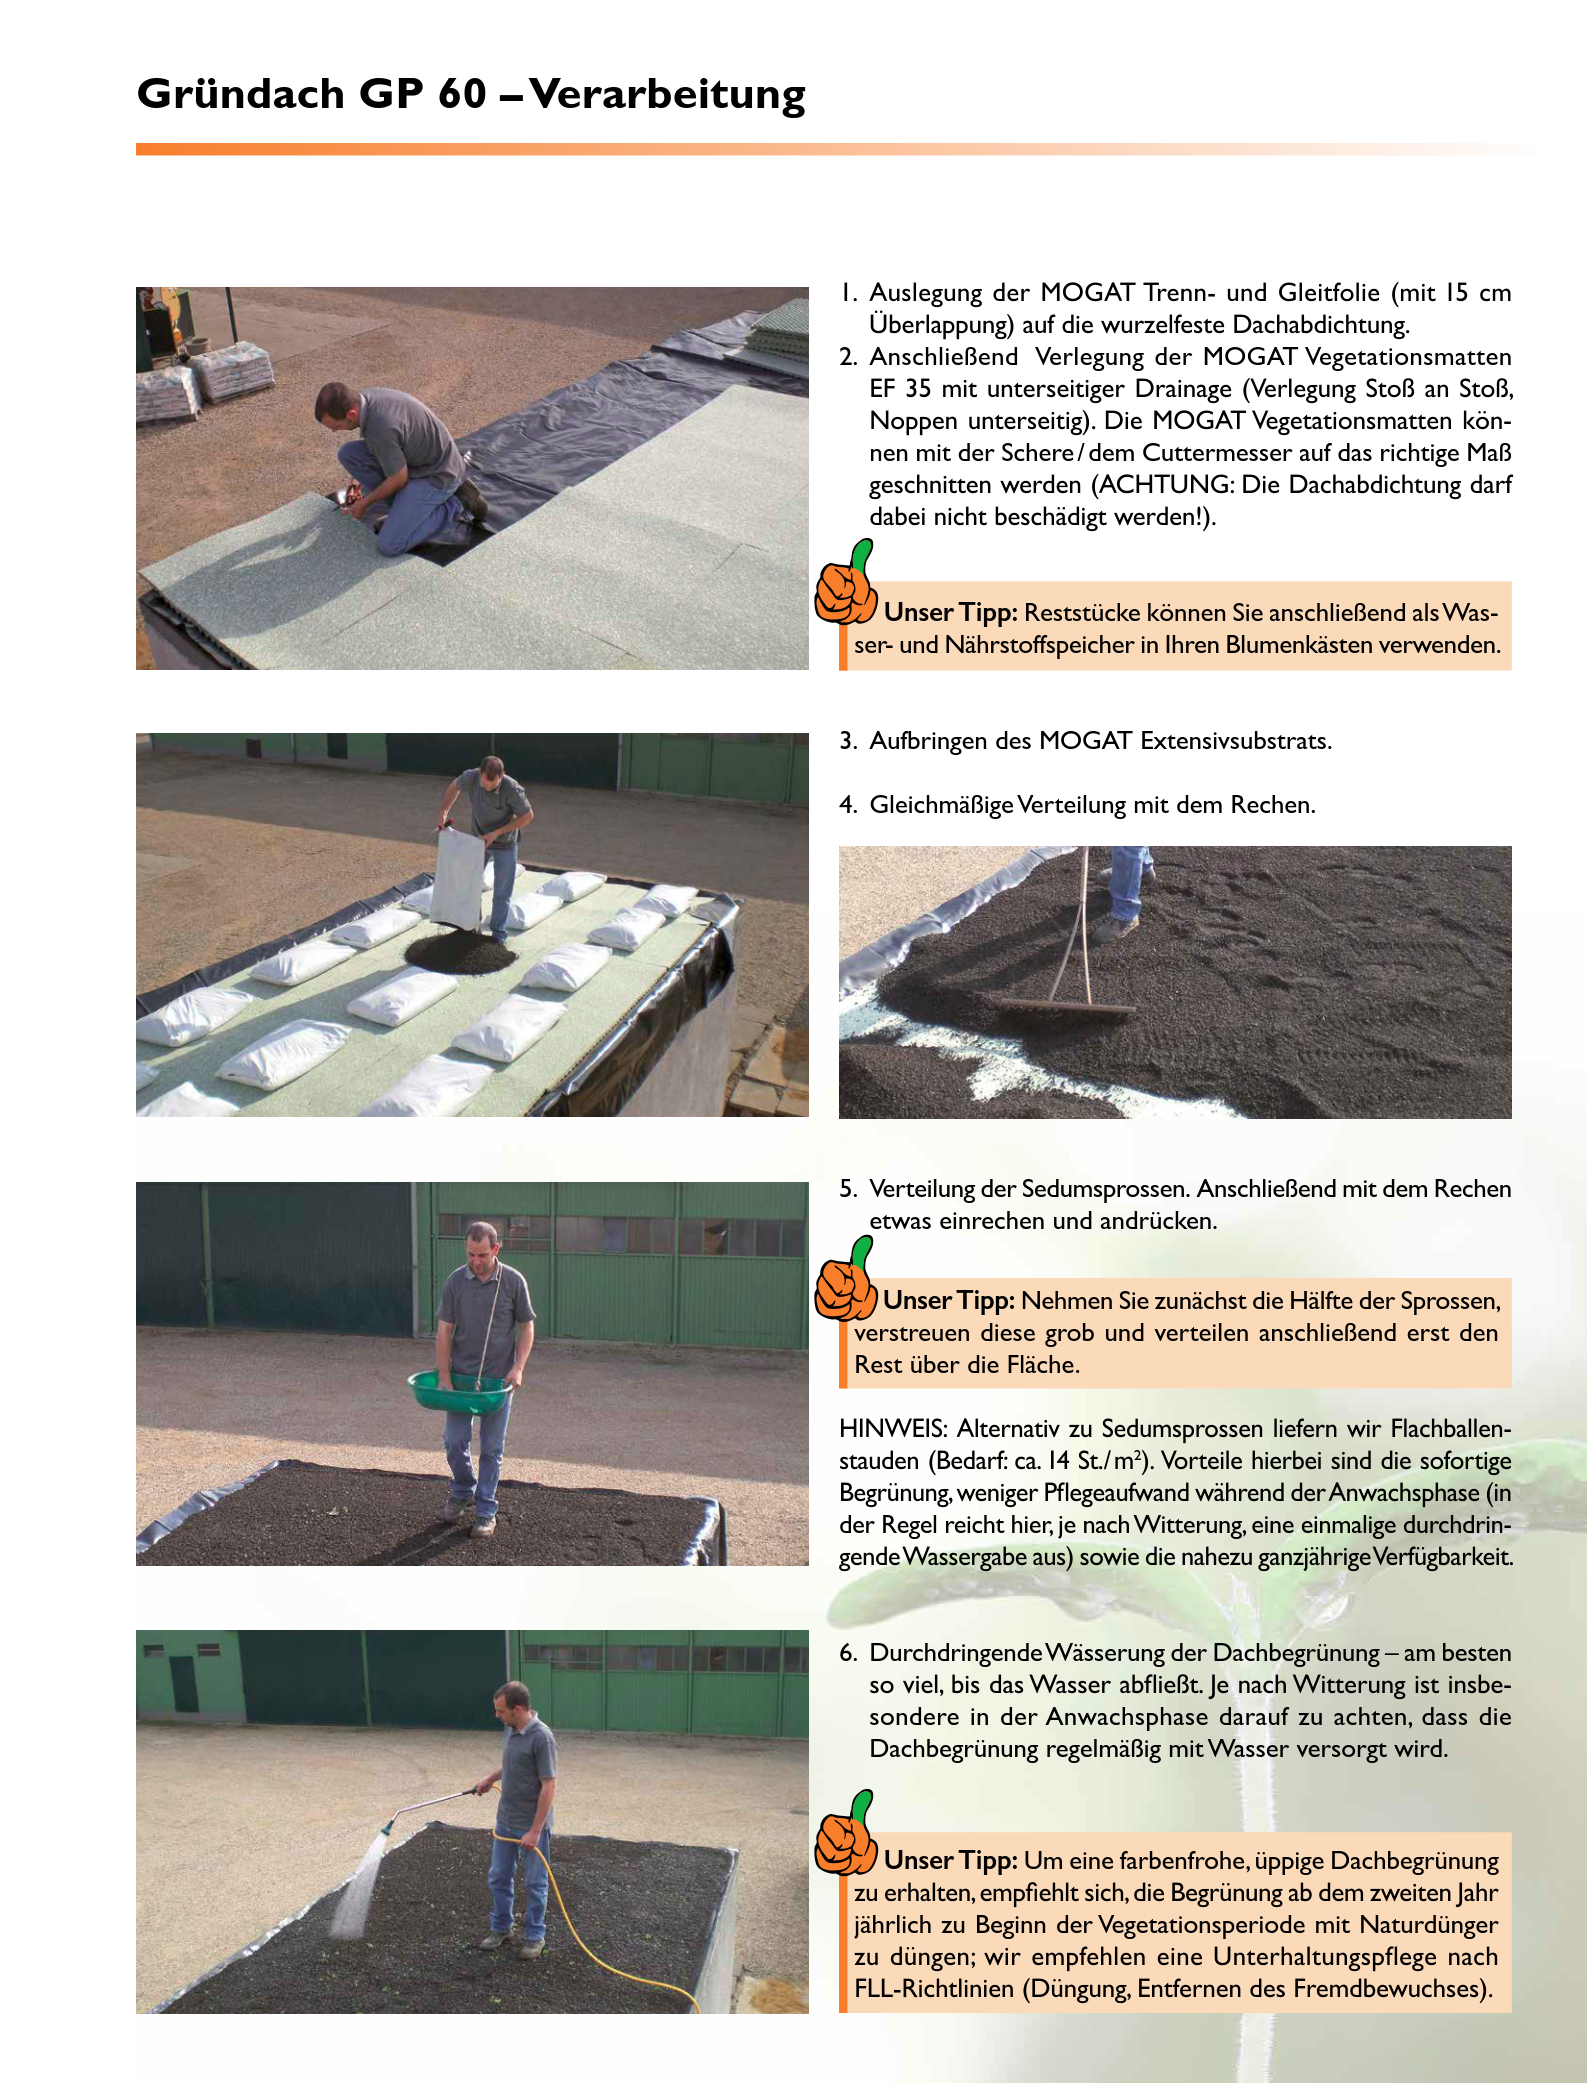 Gründach-Komplettpaket fürs Flachdach inkl. Substrat und Sprossen oder Flachballenstauden - Dachbegrünung - Dachbepflanzung